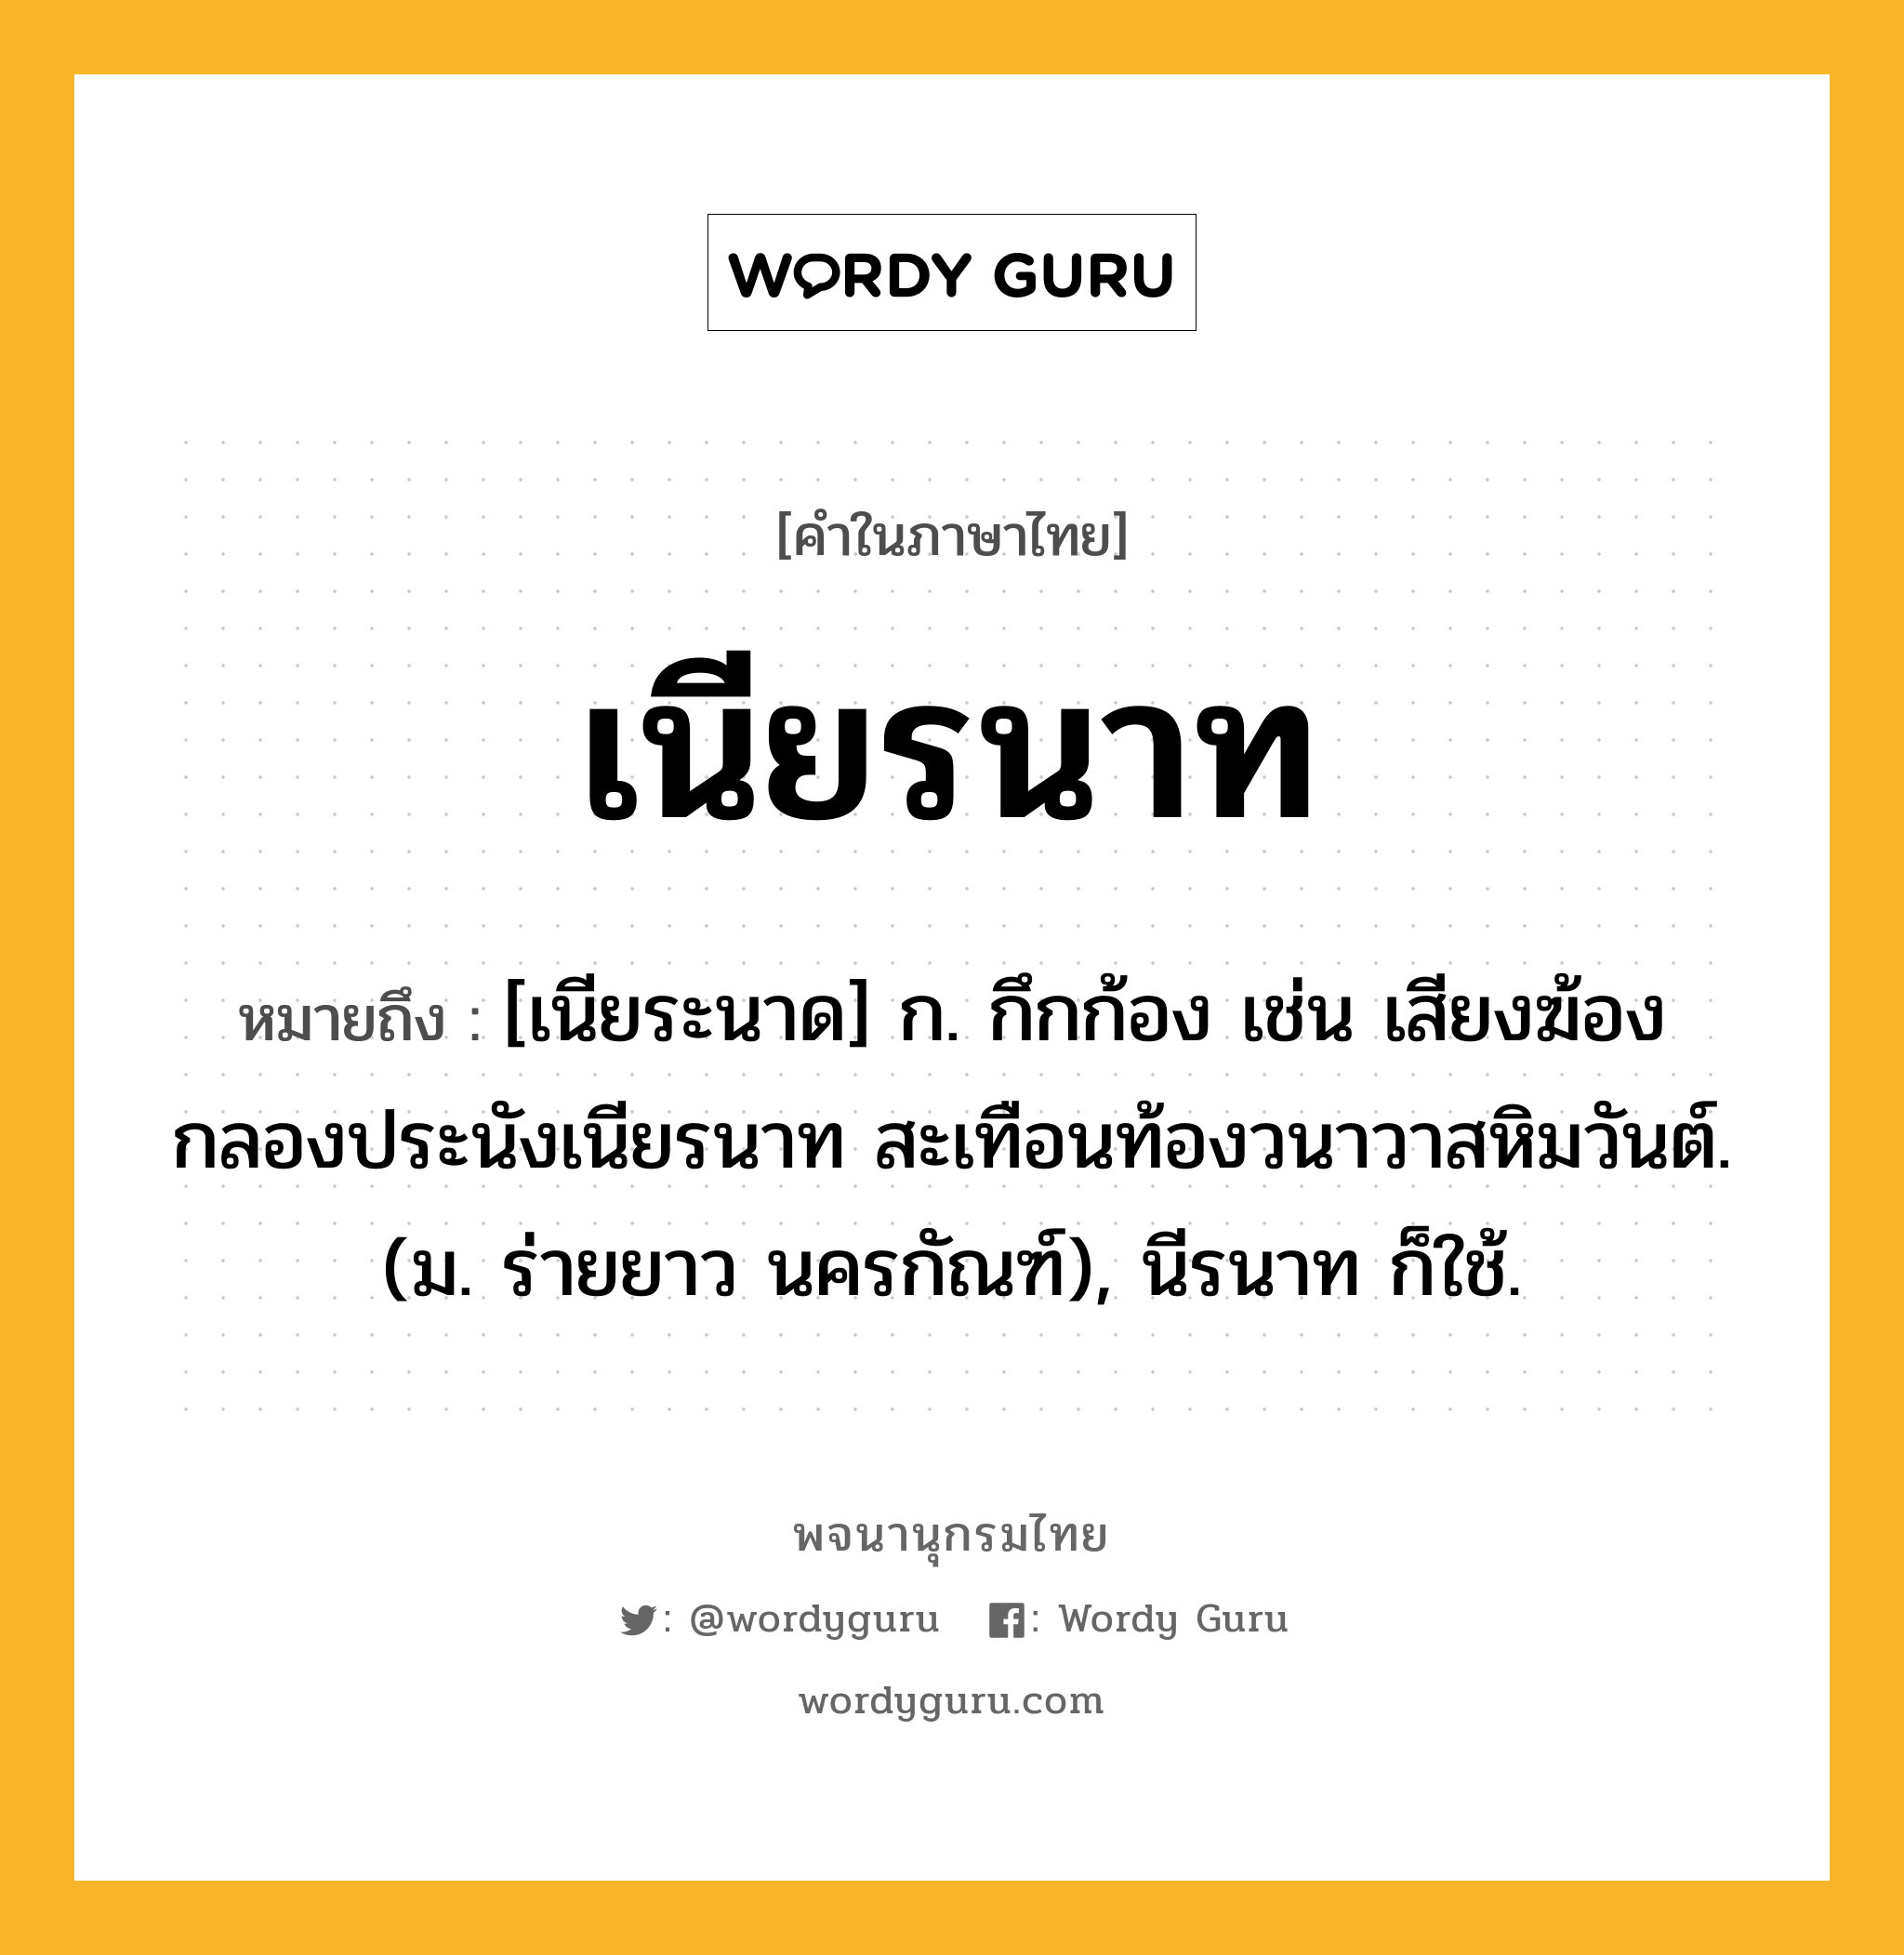 เนียรนาท หมายถึงอะไร?, คำในภาษาไทย เนียรนาท หมายถึง [เนียระนาด] ก. กึกก้อง เช่น เสียงฆ้องกลองประนังเนียรนาท สะเทือนท้องวนาวาสหิมวันต์. (ม. ร่ายยาว นครกัณฑ์), นีรนาท ก็ใช้.